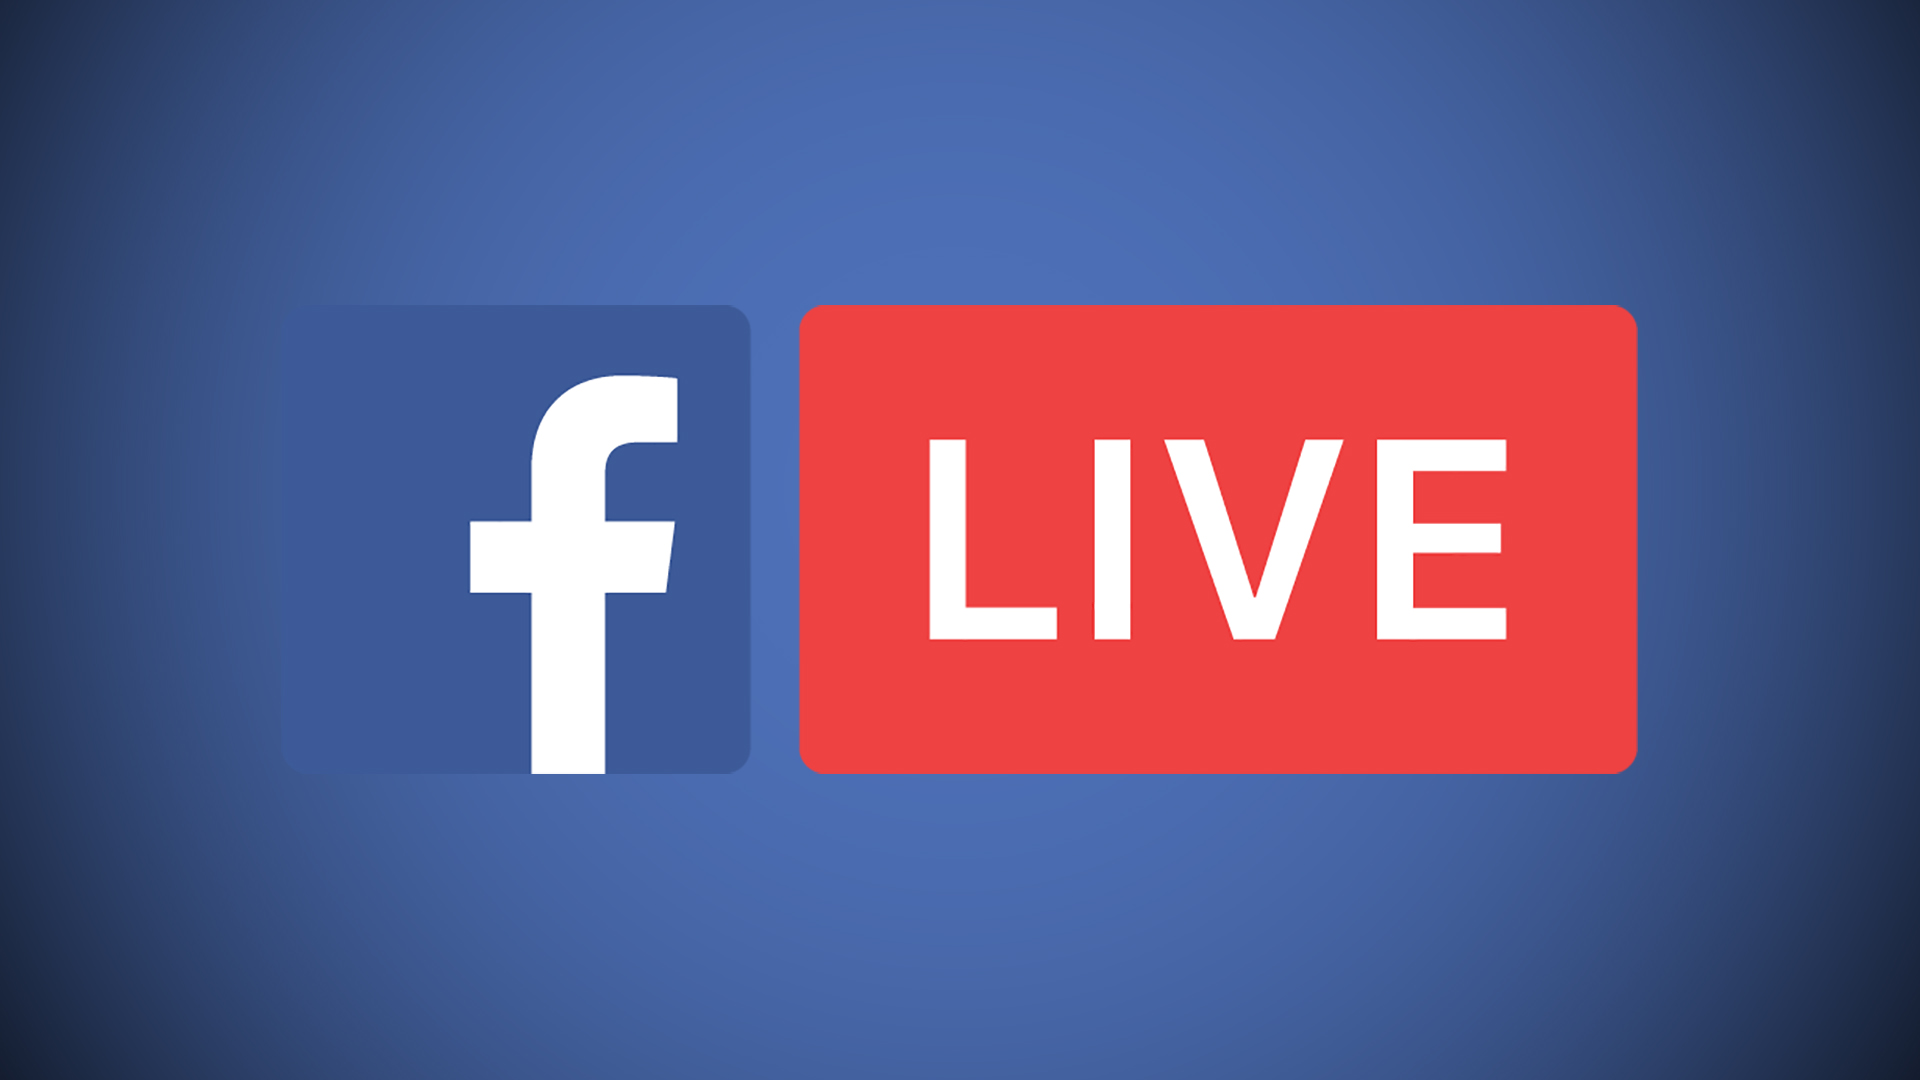 Facebook xác nhận máy tính cũng có thể ‘Live Video’